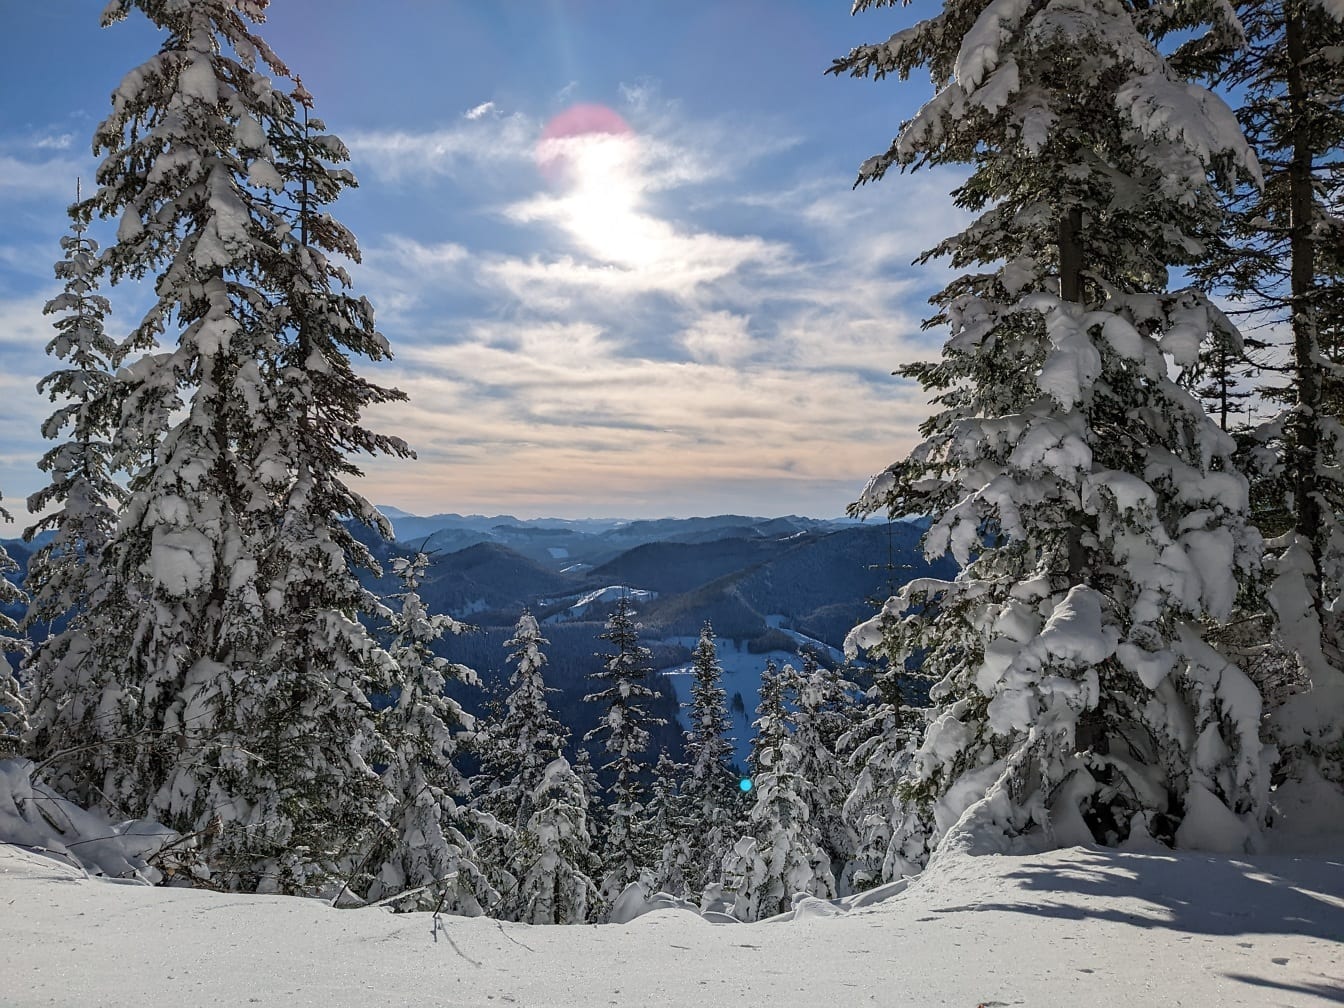 Χιονισμένα κωνοφόρα σε πρώτο πλάνο με ηλιόλουστη κοιλάδα με δέντρα στο βάθος